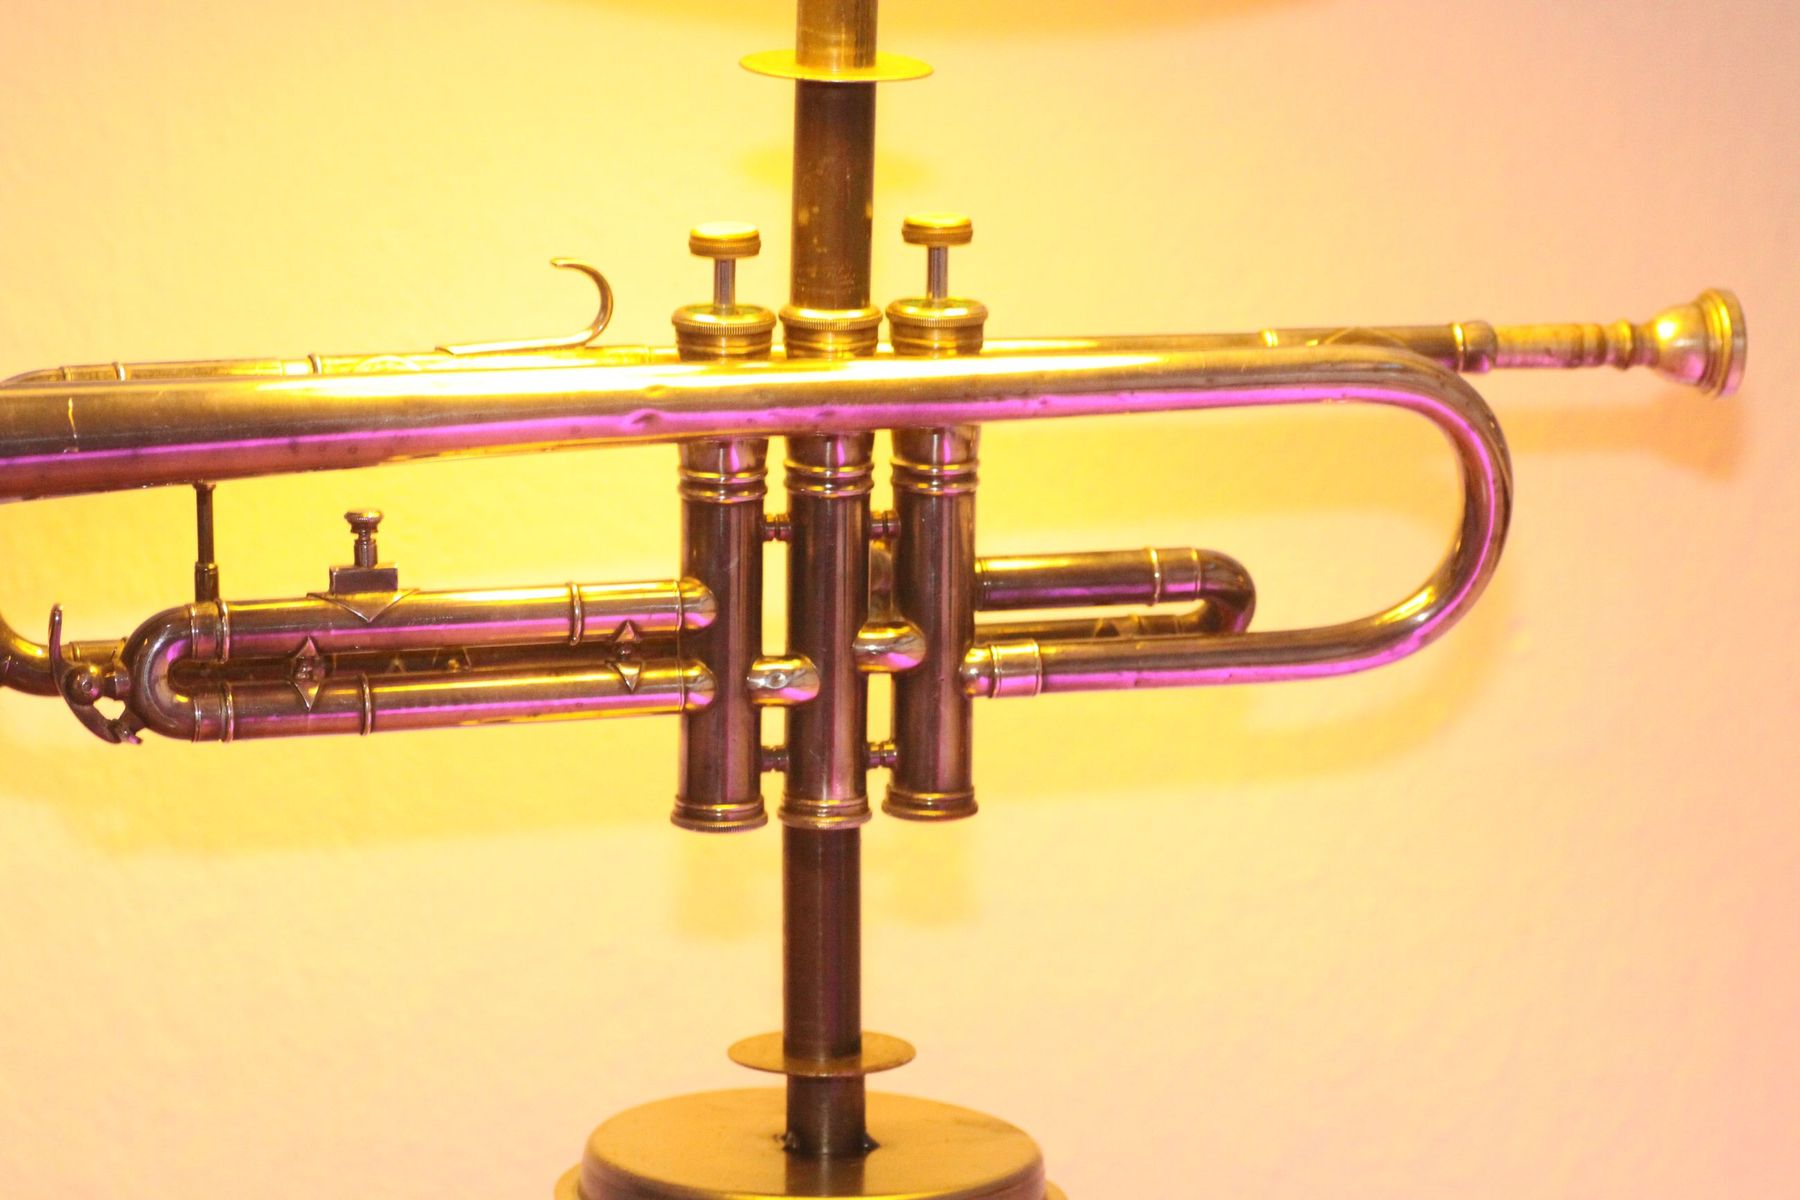 Trumpet lamp floor lamp steel tubes silver beige 129cm Retro Vintage 31B